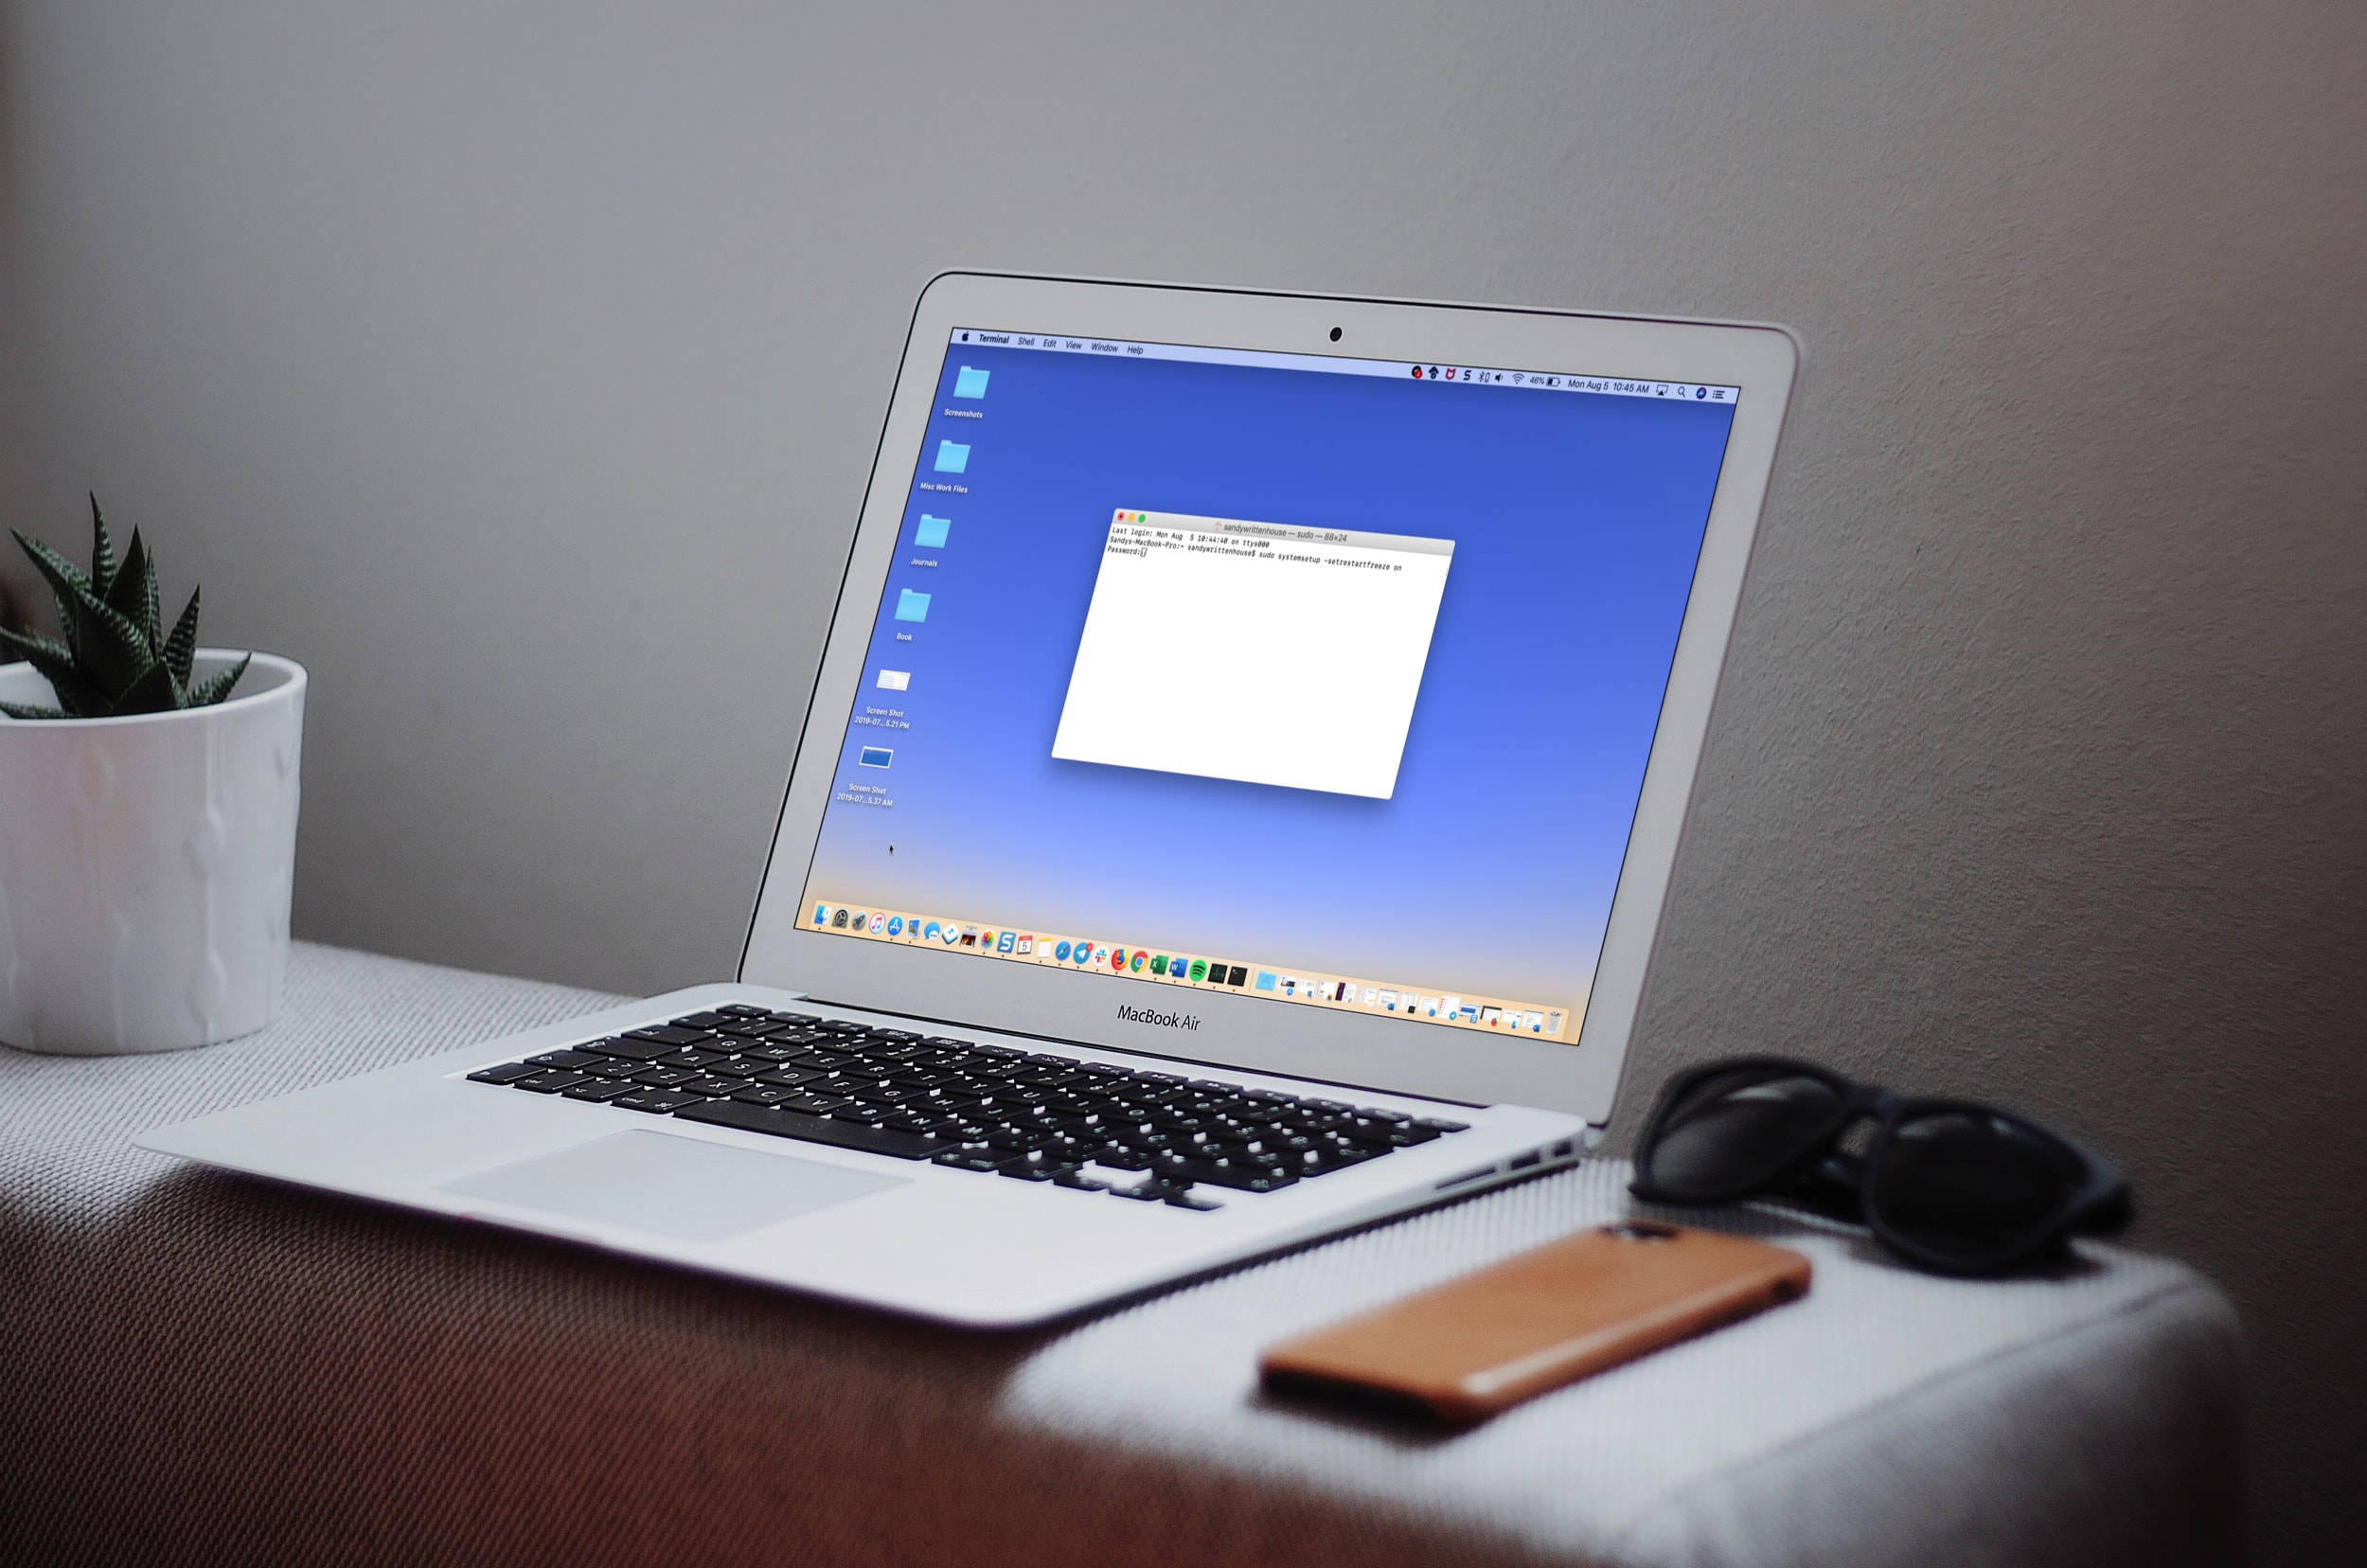 شاشة MacBook مع الأوامر الطرفية